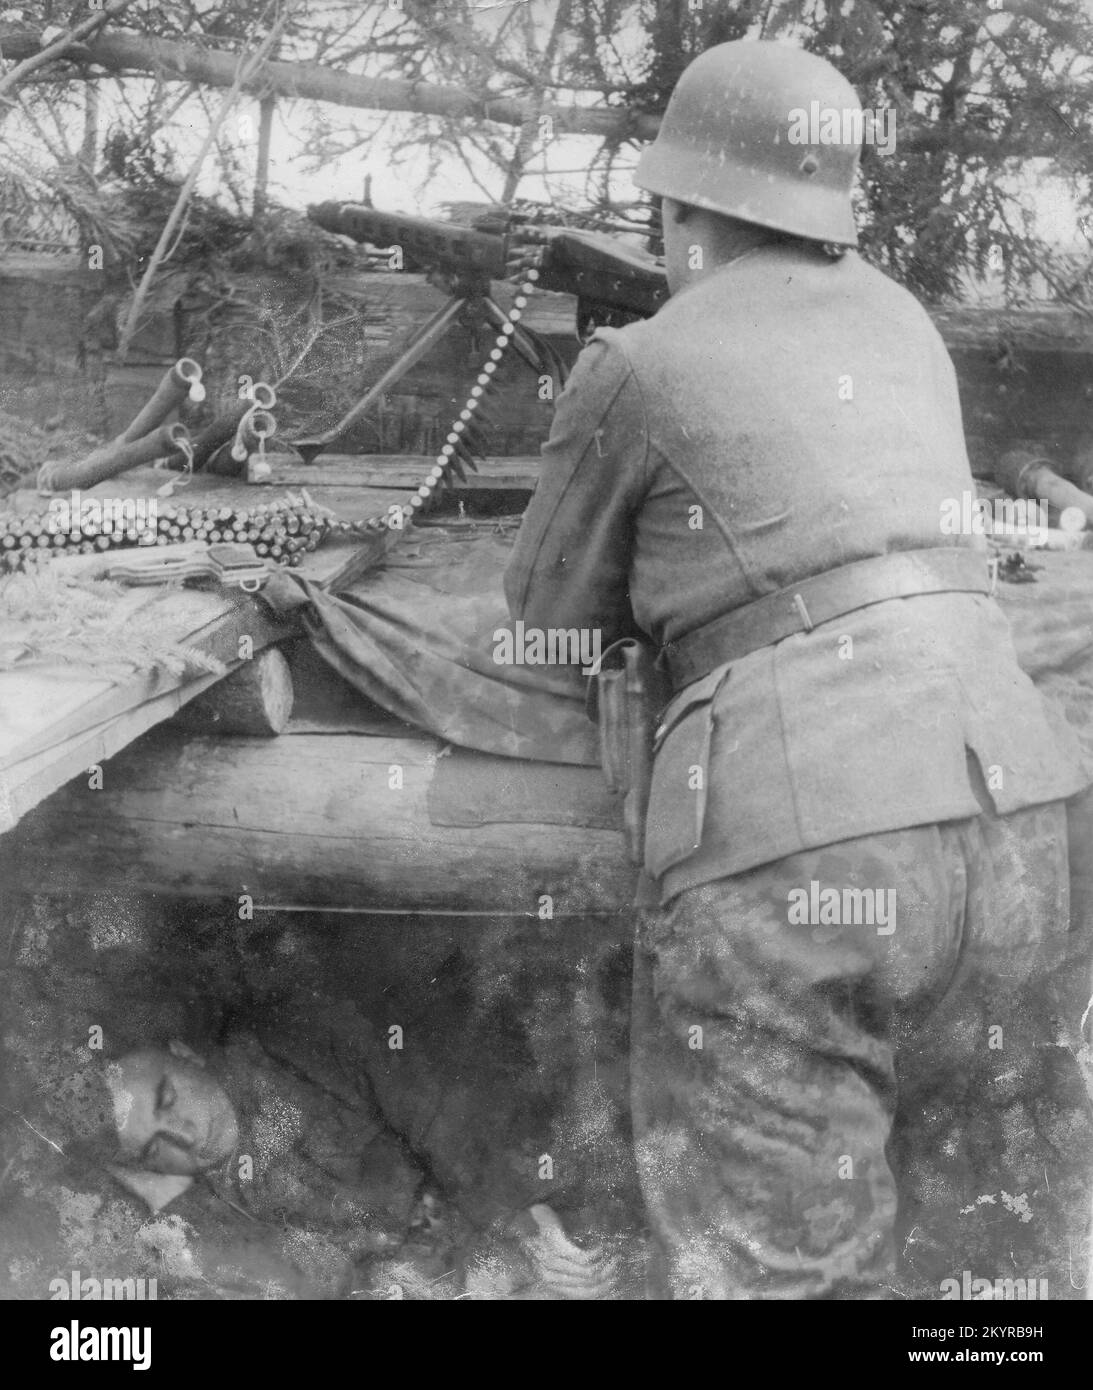 Guerre mondiale deux le soldat allemand tire un MG42 depuis une position cachée sur le secteur nord du Front russe 1944. L'homme est un volontaire estonien dans le Waffen SS Banque D'Images